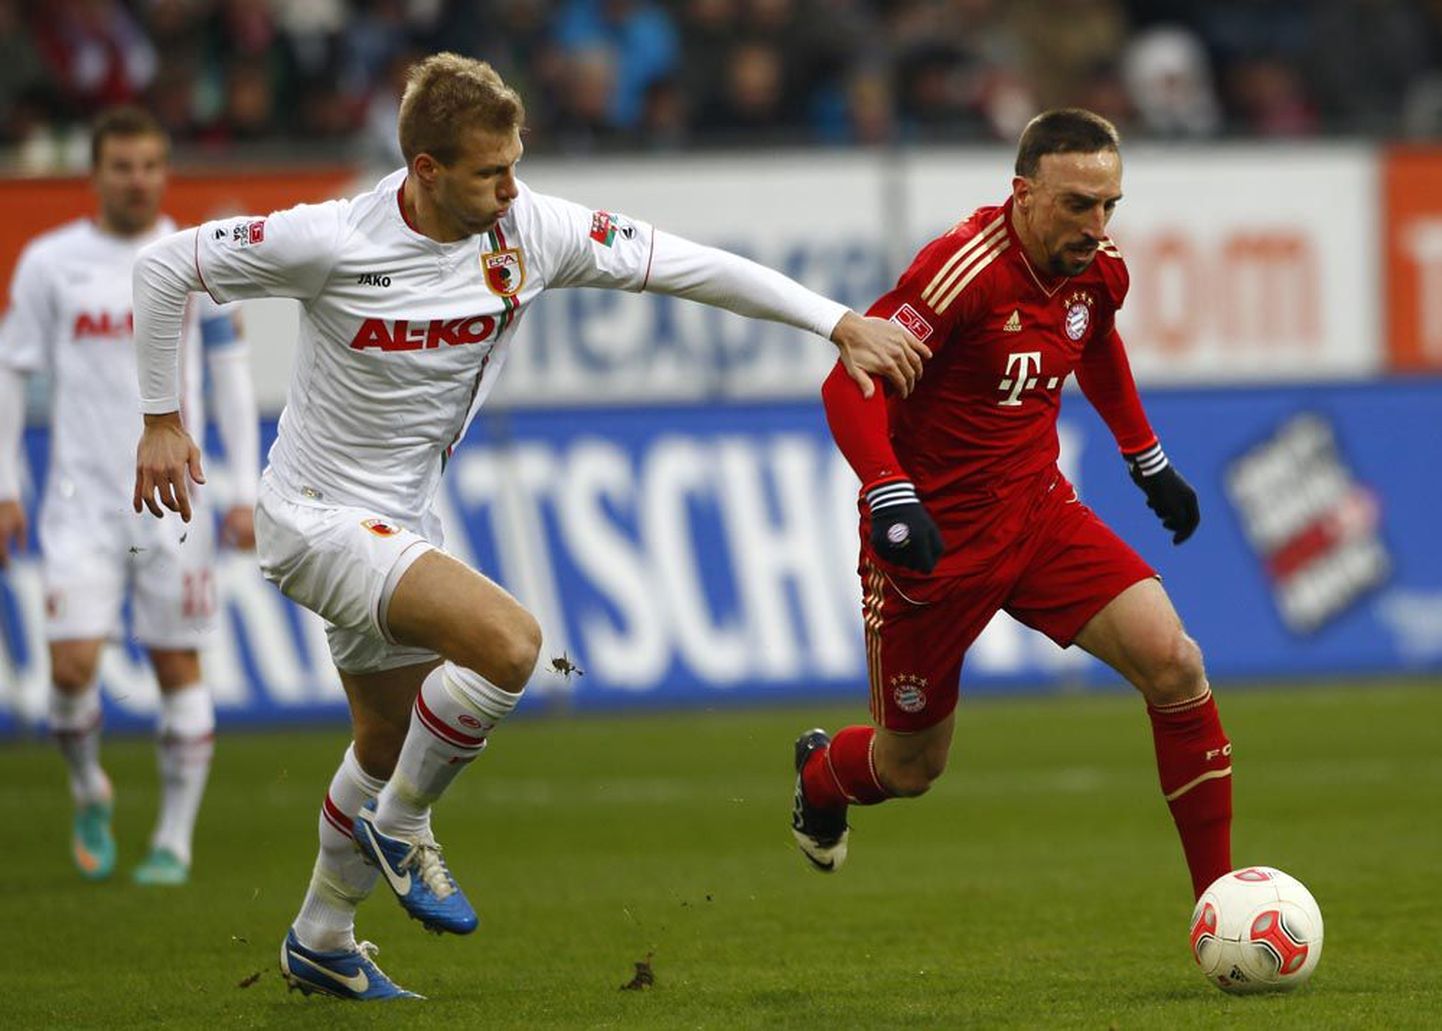 FC Augsburgi keskkaitsja Ragnar Klavan Bundesliga kohtumises Müncheni Bayerni tähtmängija Franck Ribery’ga võidu jooksmas.